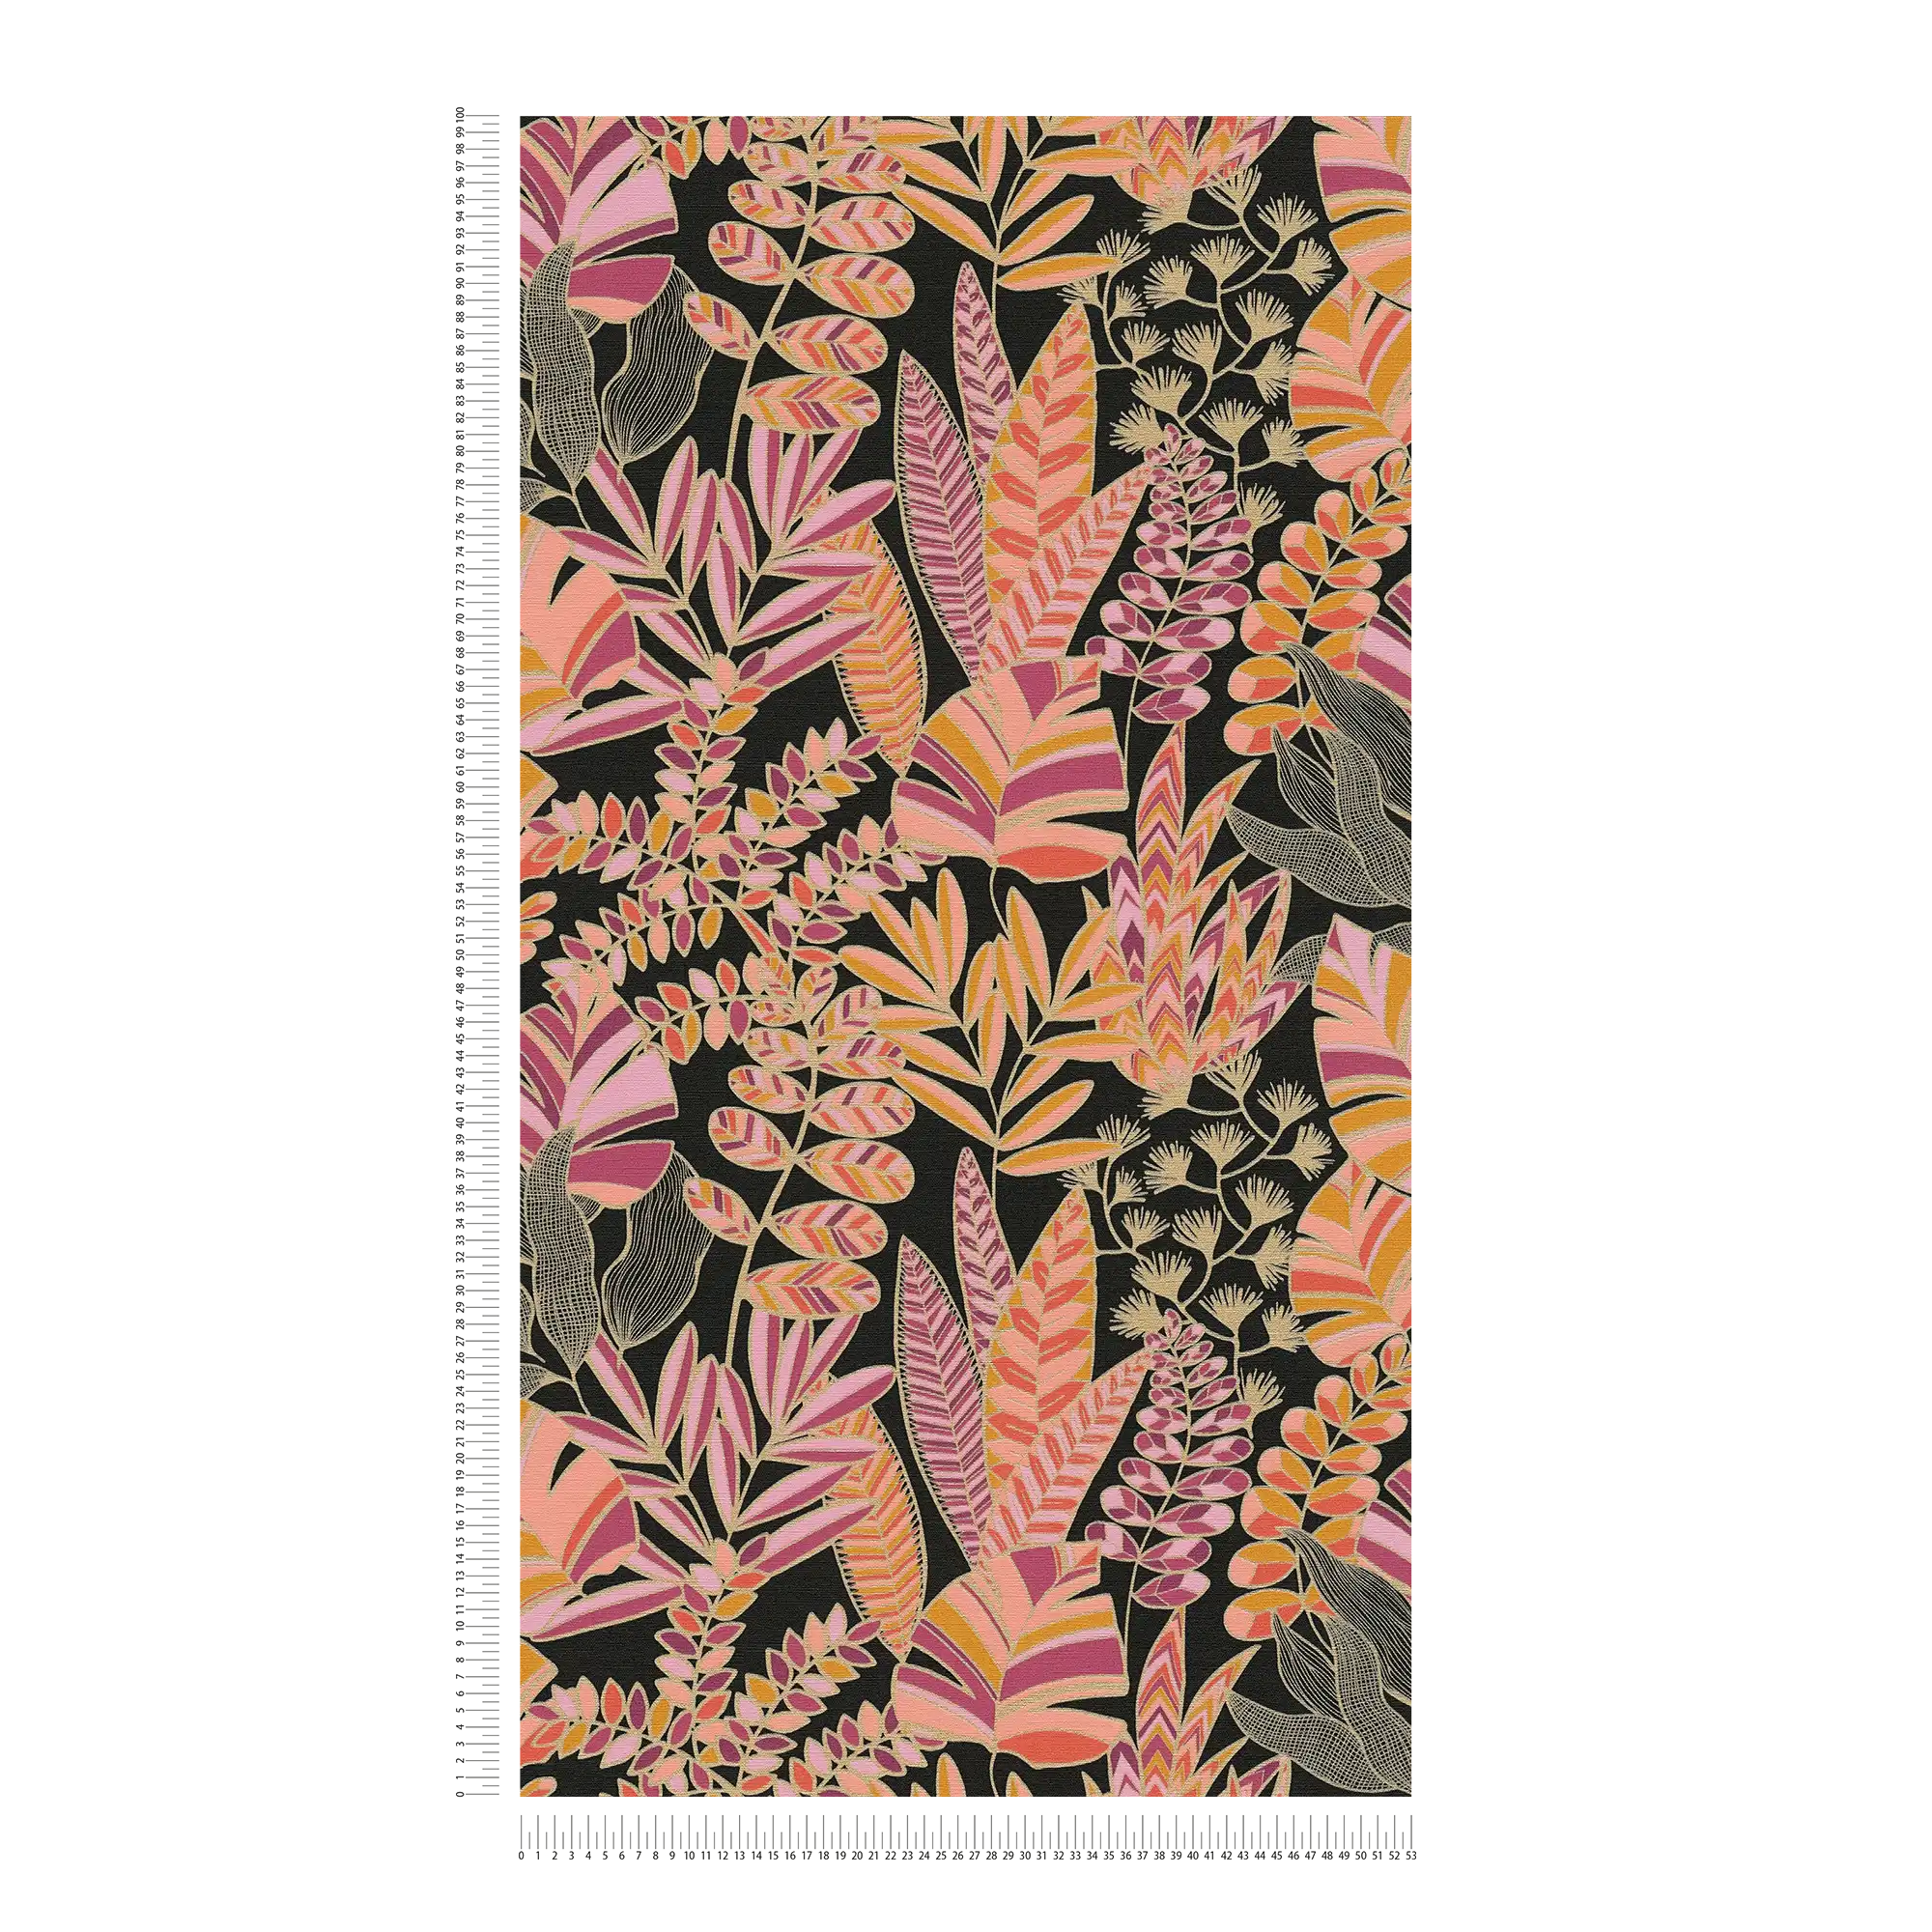             Carta da parati in tessuto non tessuto in stile accattivante con grandi foglie - nero, rosa, arancione
        